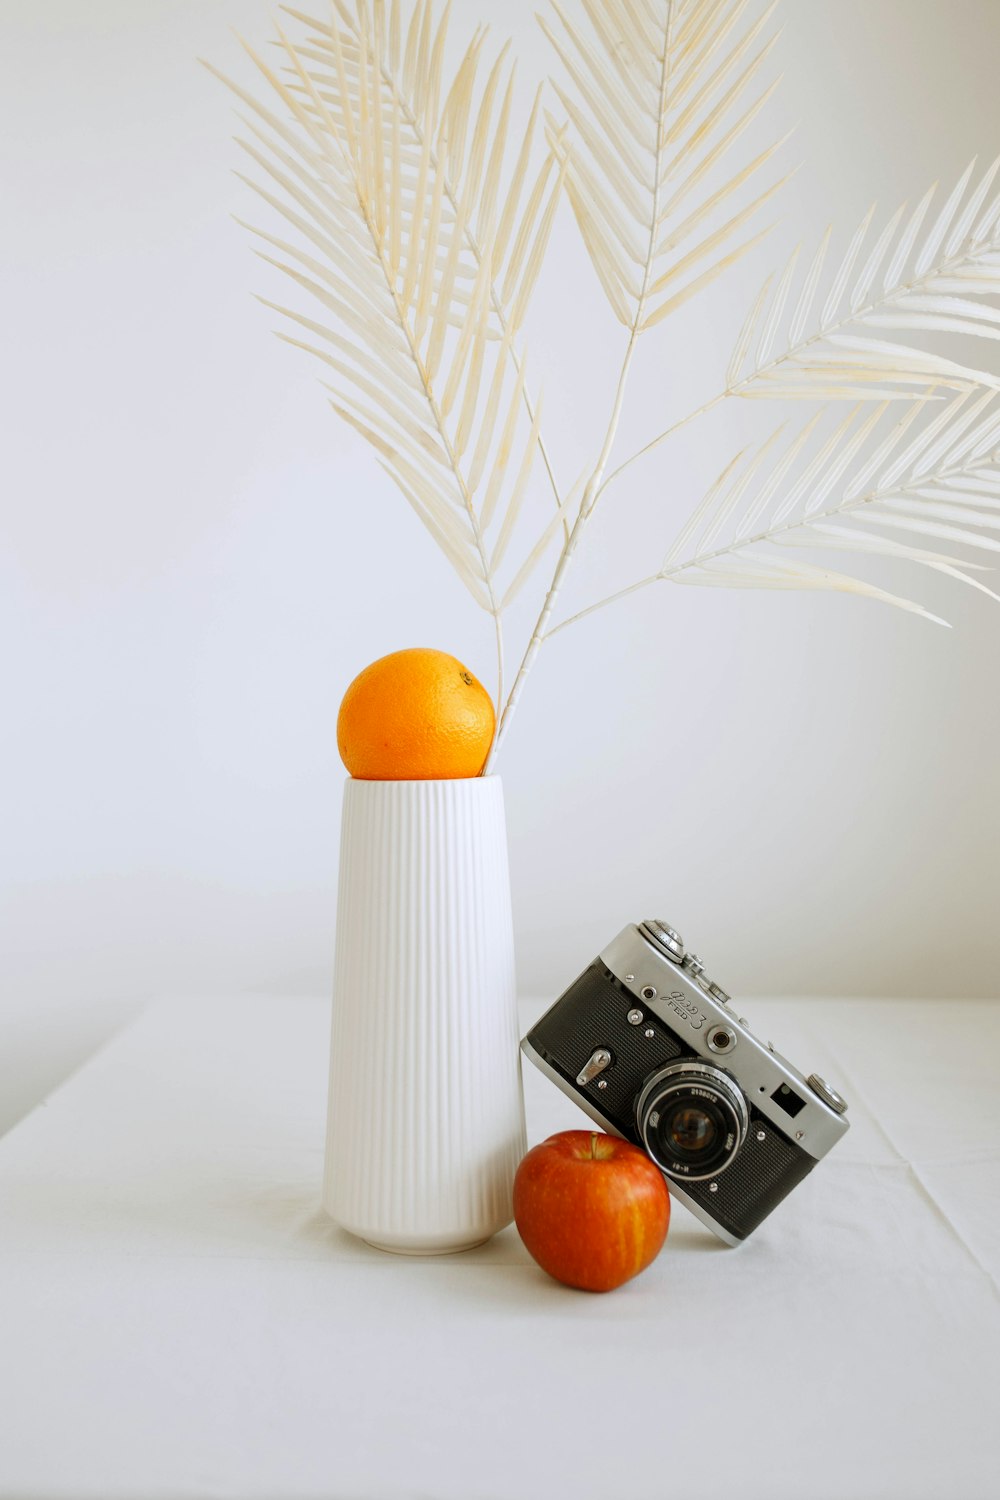 macchina fotografica bianca e nera accanto alla frutta arancione